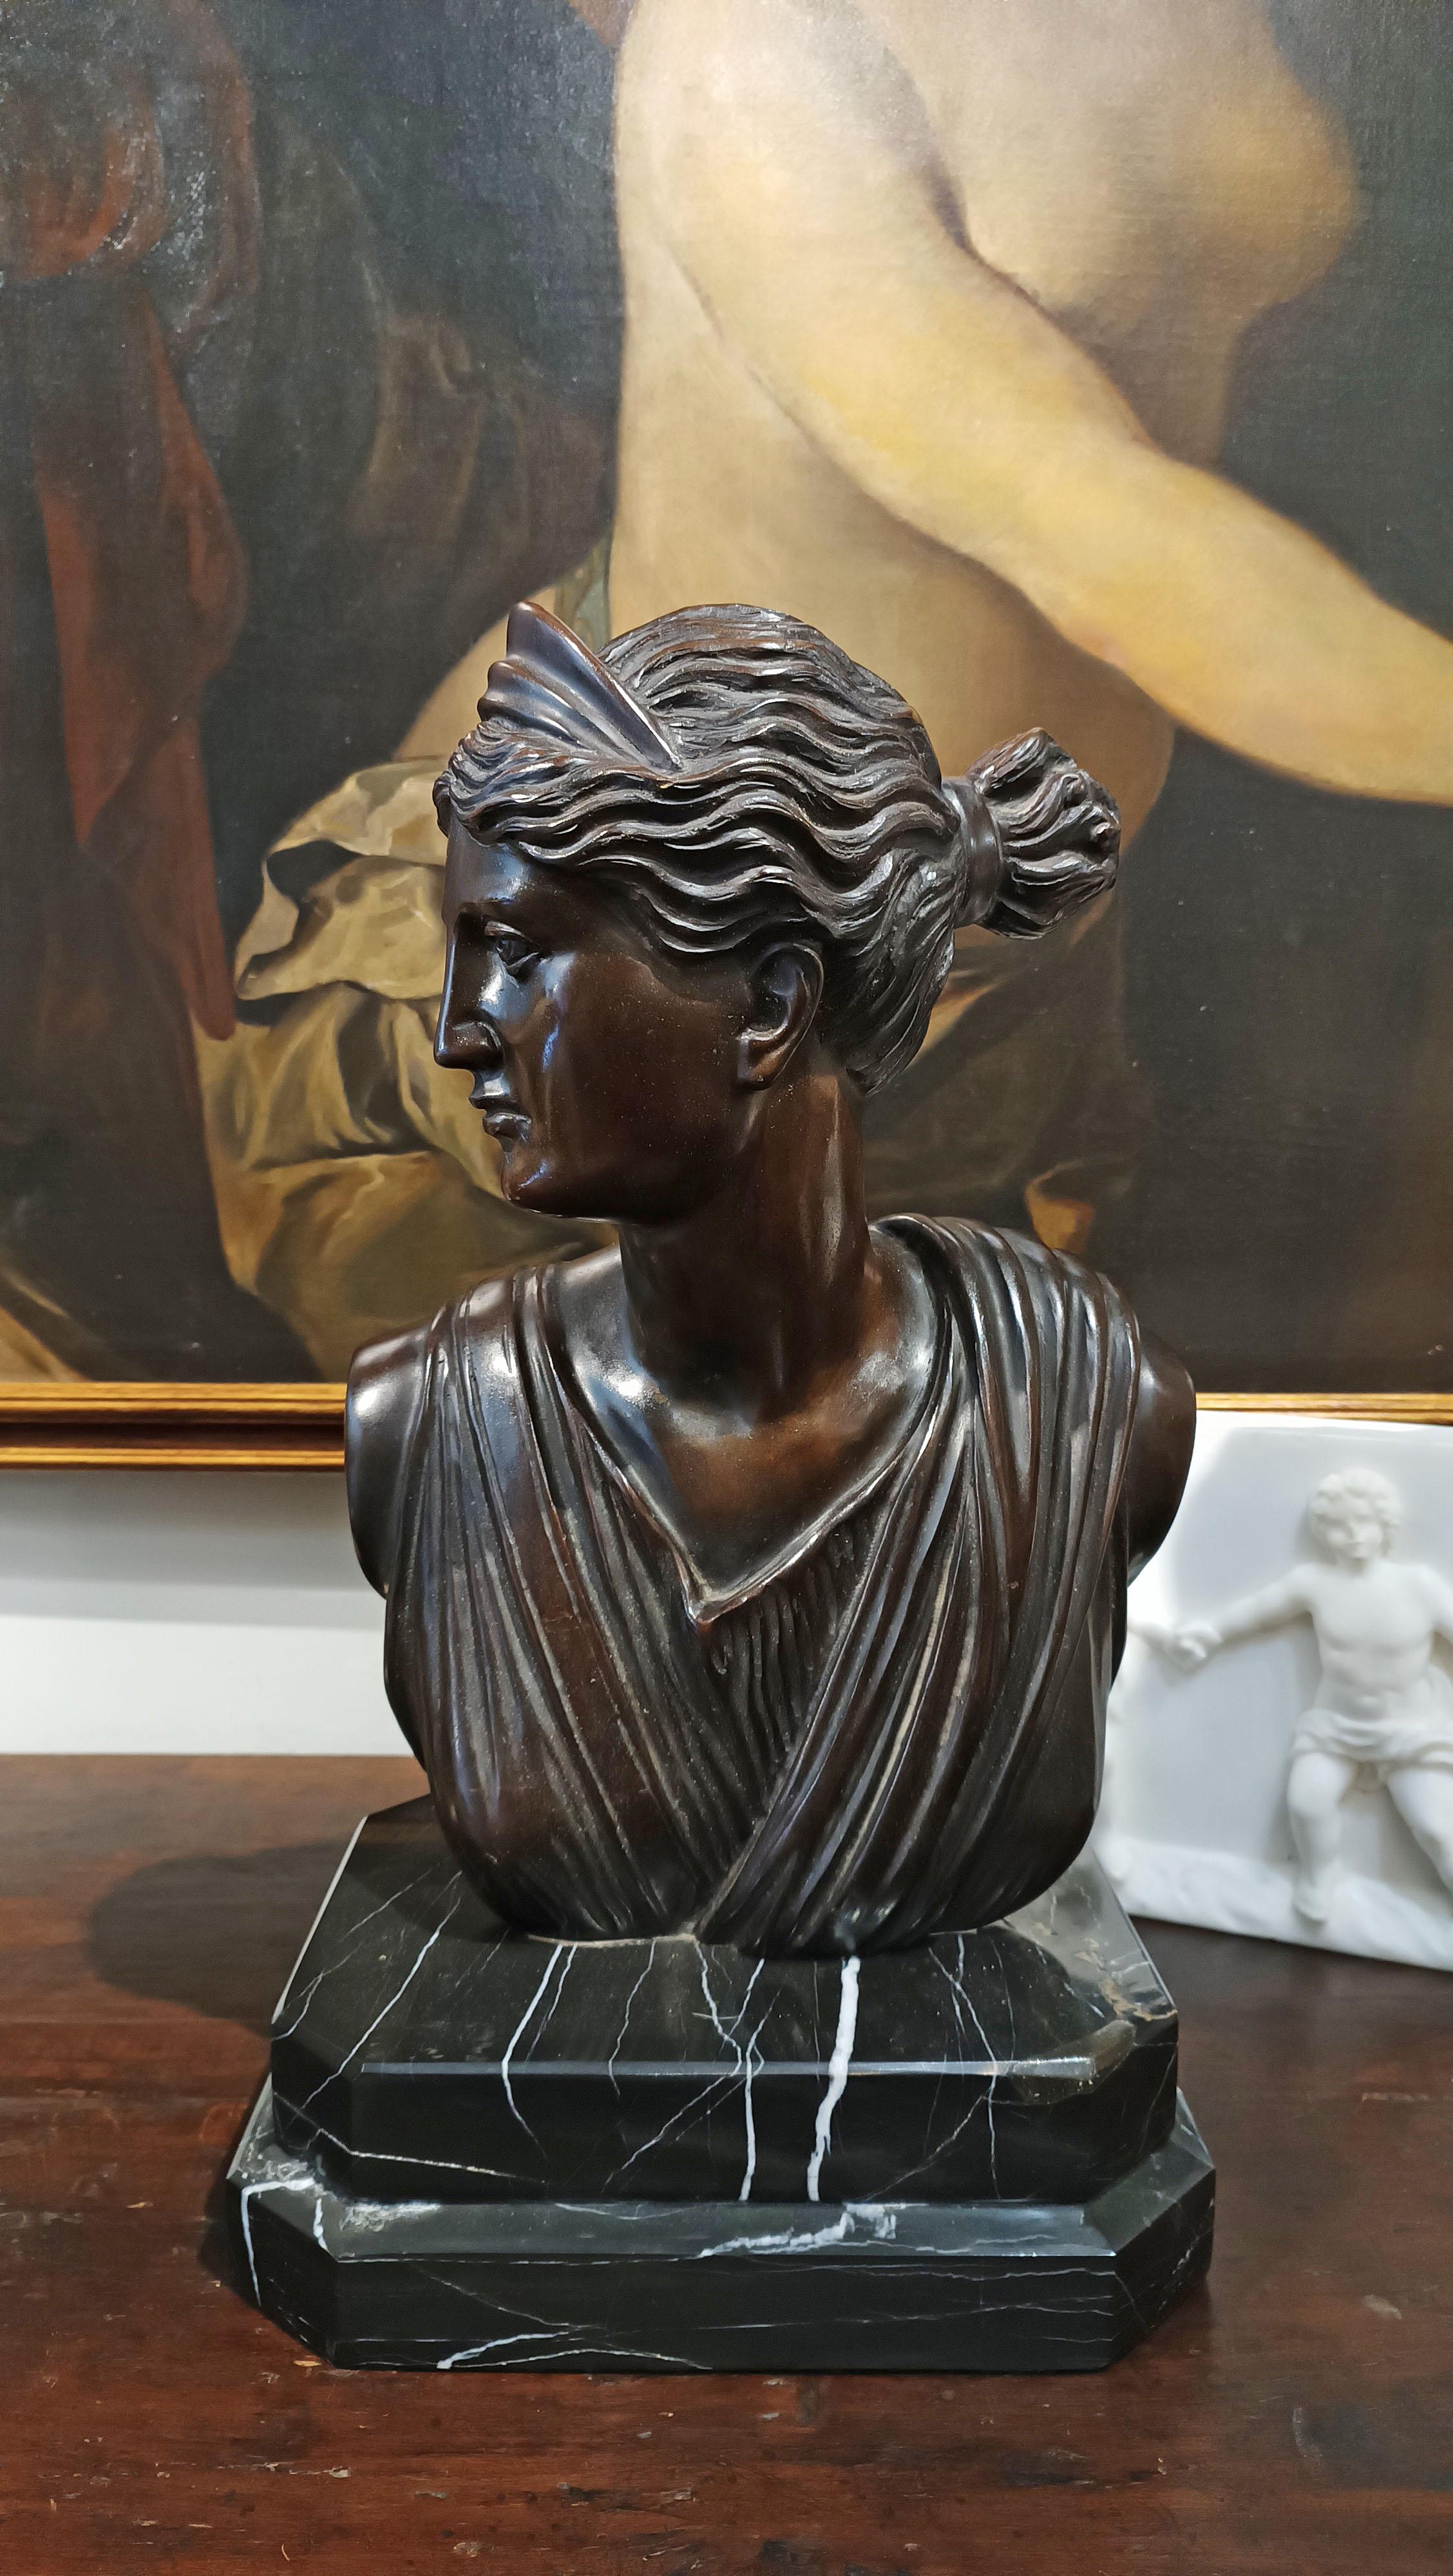 Magnifique buste en bronze coulé à la cire perdue, représentant la déesse de la chasse Diane. L'œuvre rappelle le style de l'art classique, montrant la déesse de profil, les cheveux rassemblés en chignon et ornés du traditionnel diadème au-dessus du